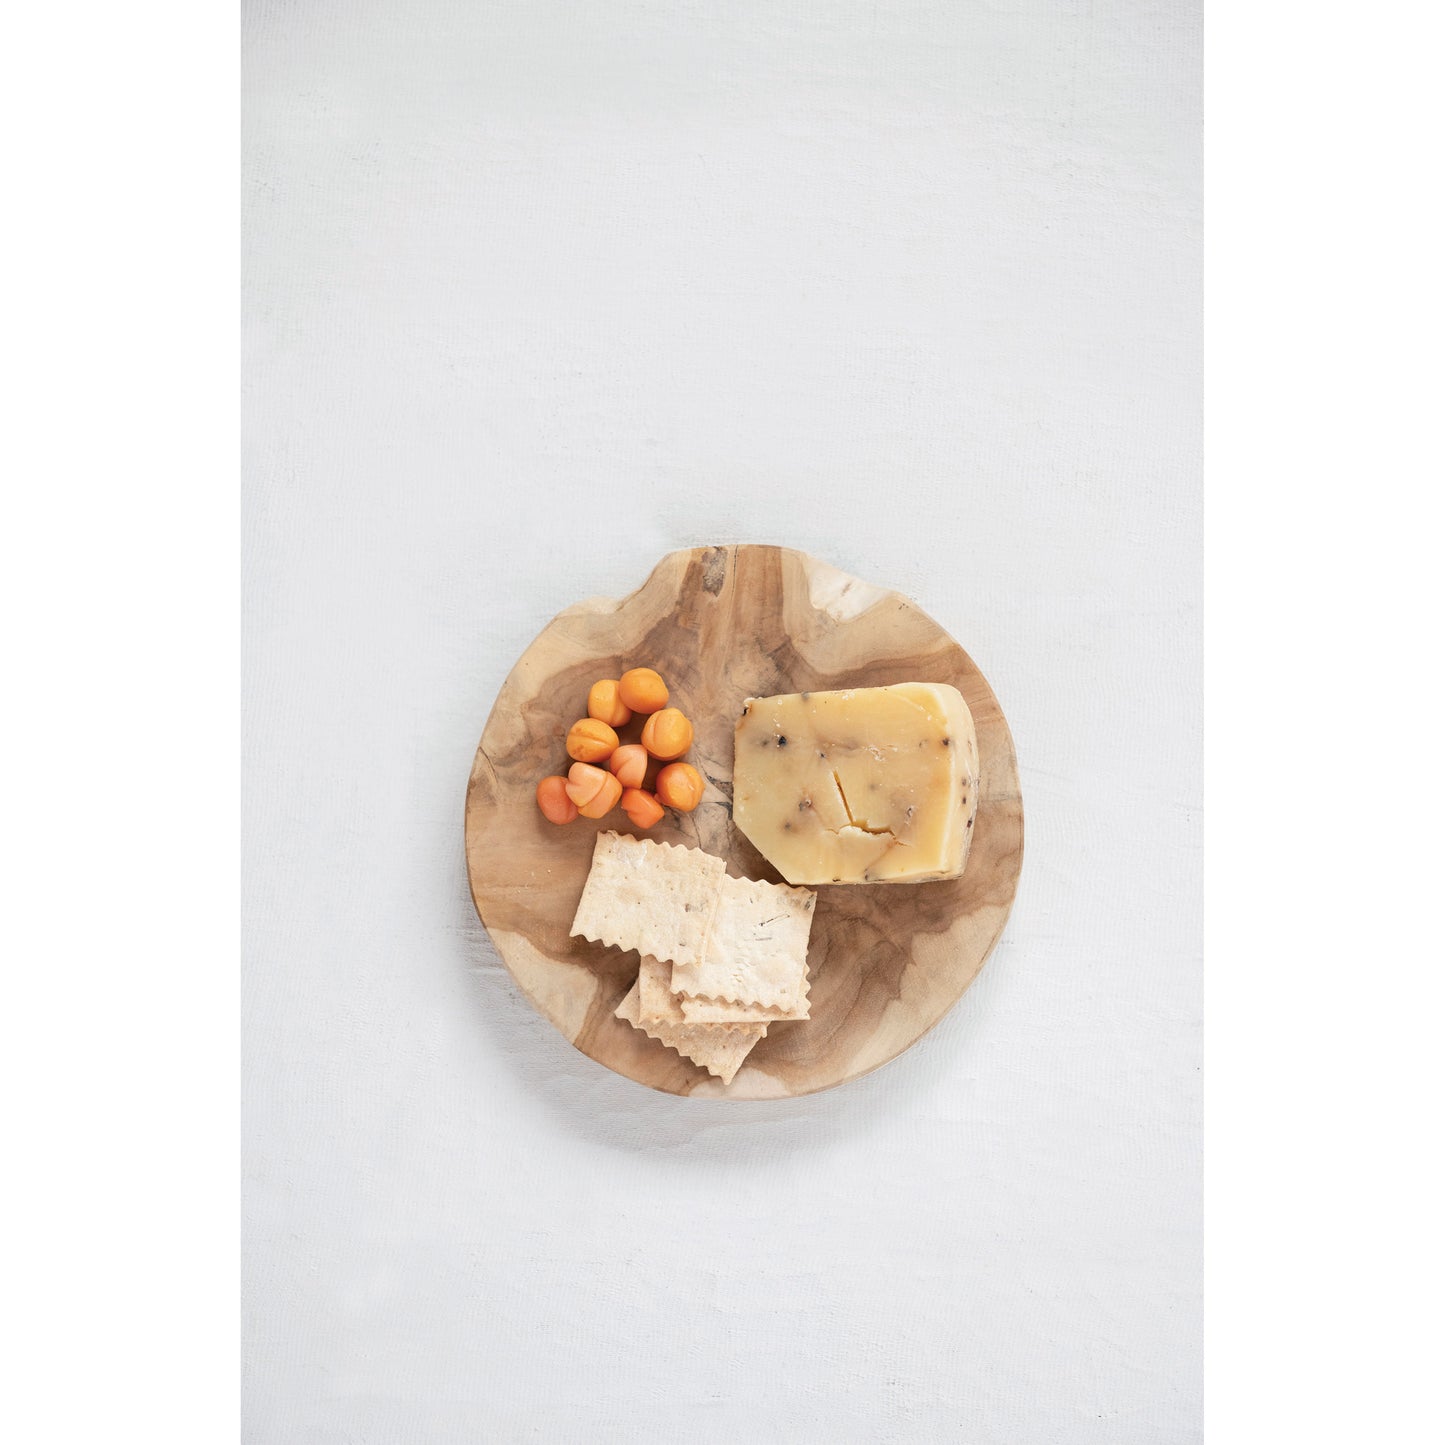 Teakwood Cheese/Cutting Board